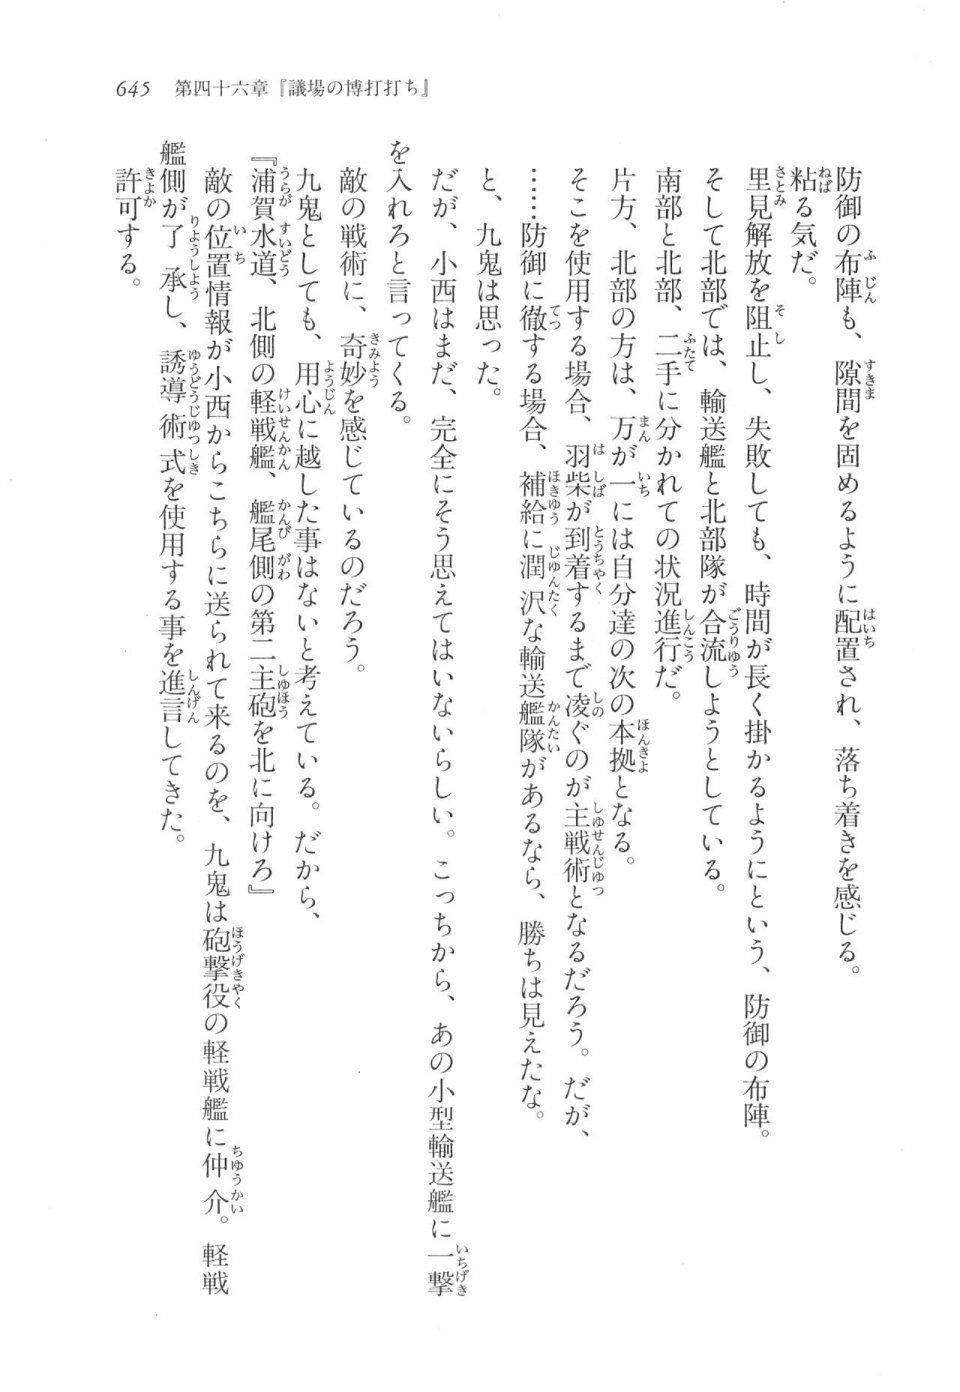 Kyoukai Senjou no Horizon LN Vol 17(7B) - Photo #647